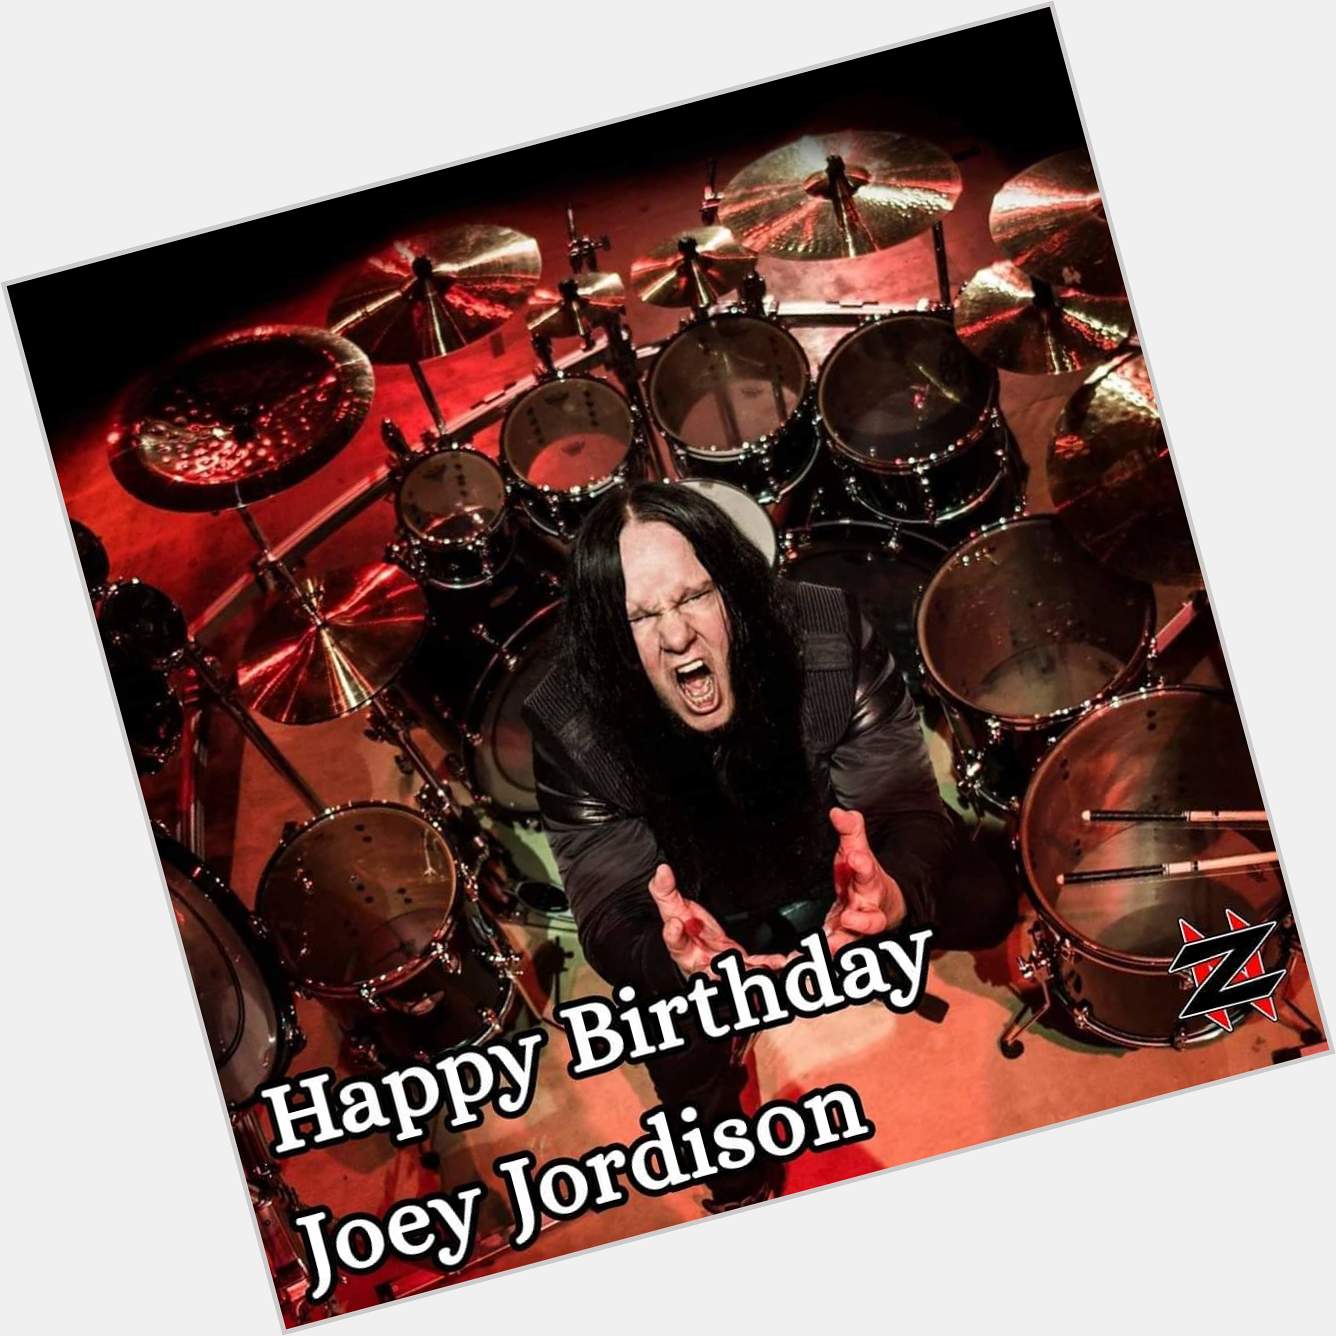 Happy 45th Birthday to Joey Jordison!        